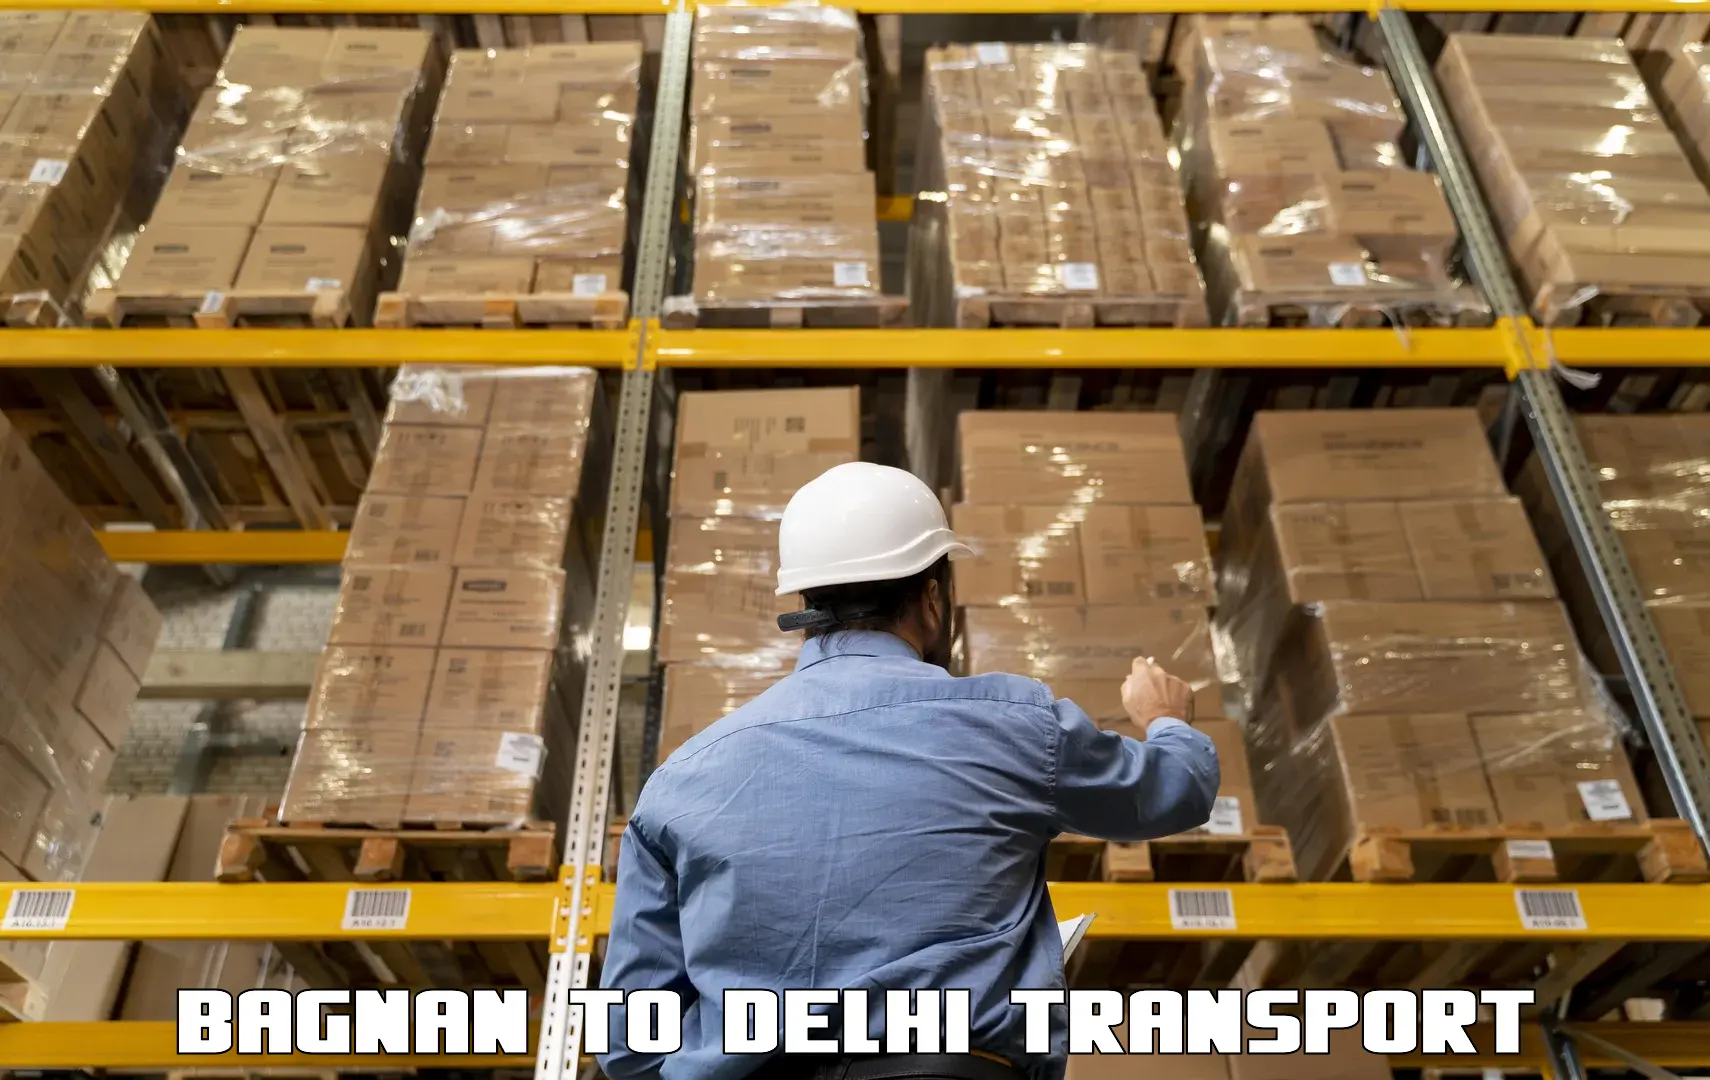 Intercity goods transport Bagnan to IIT Delhi